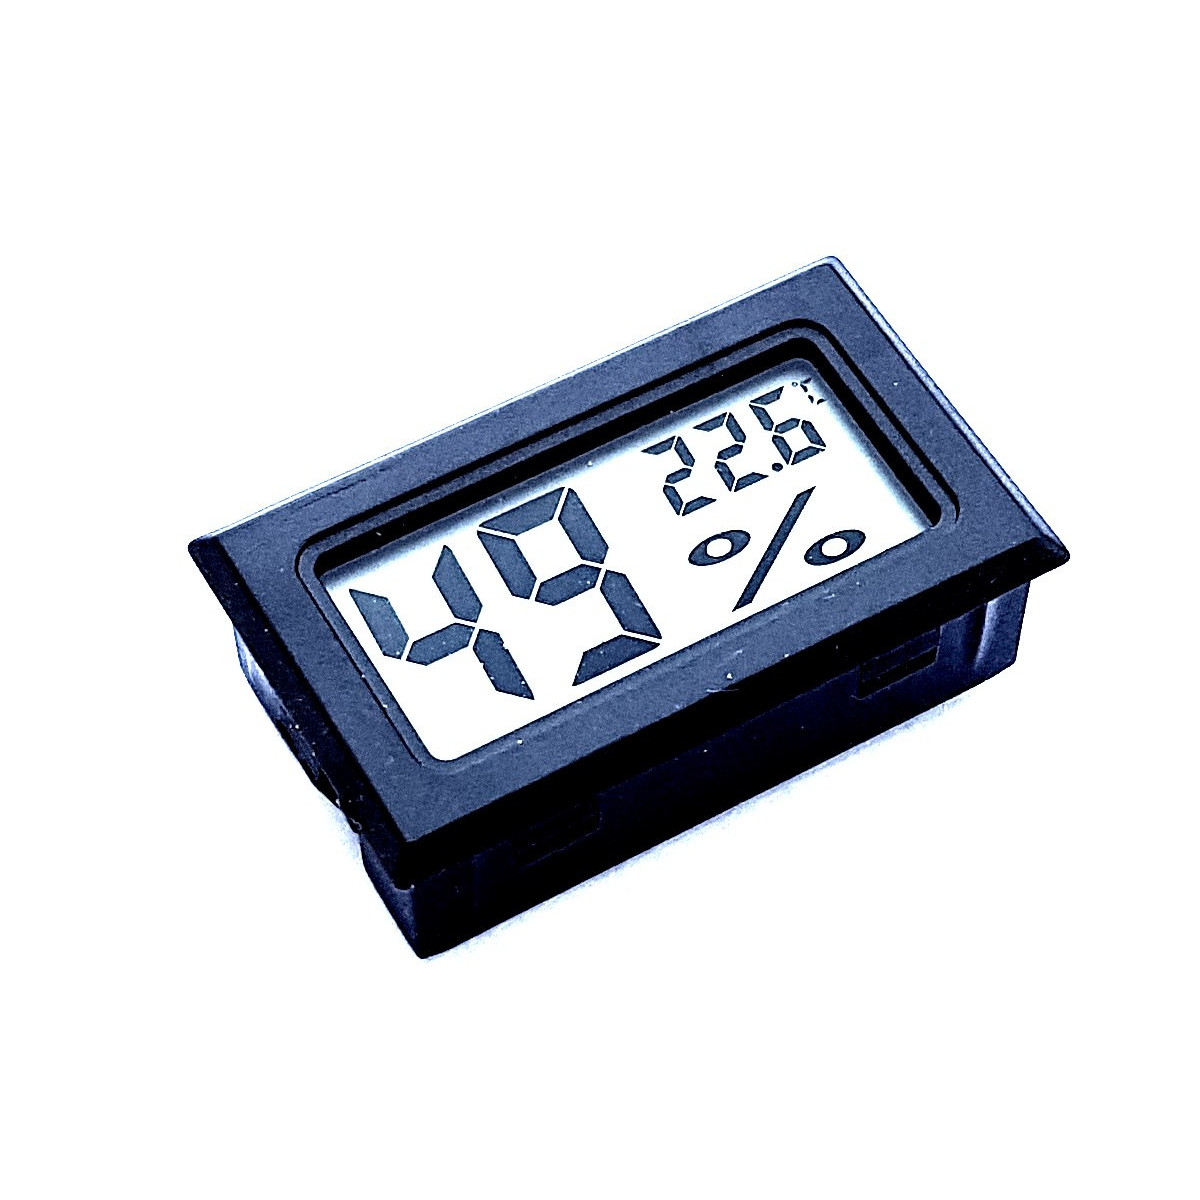 thermomètre numérique hygromètre température humidité - Shop